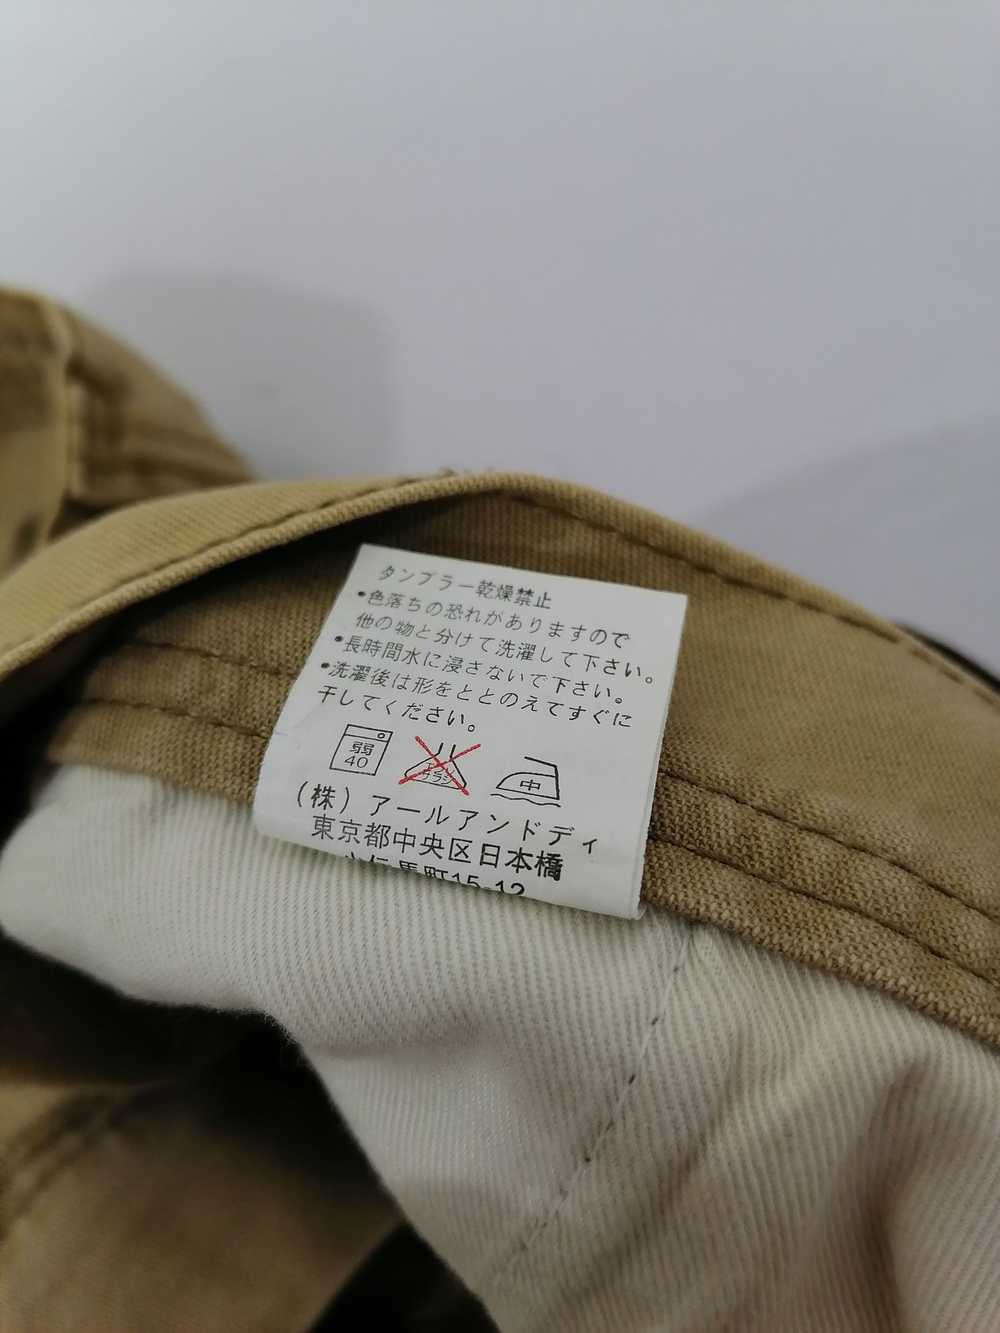 Japanese Brand × Streetwear Twenty Works Pants - image 6